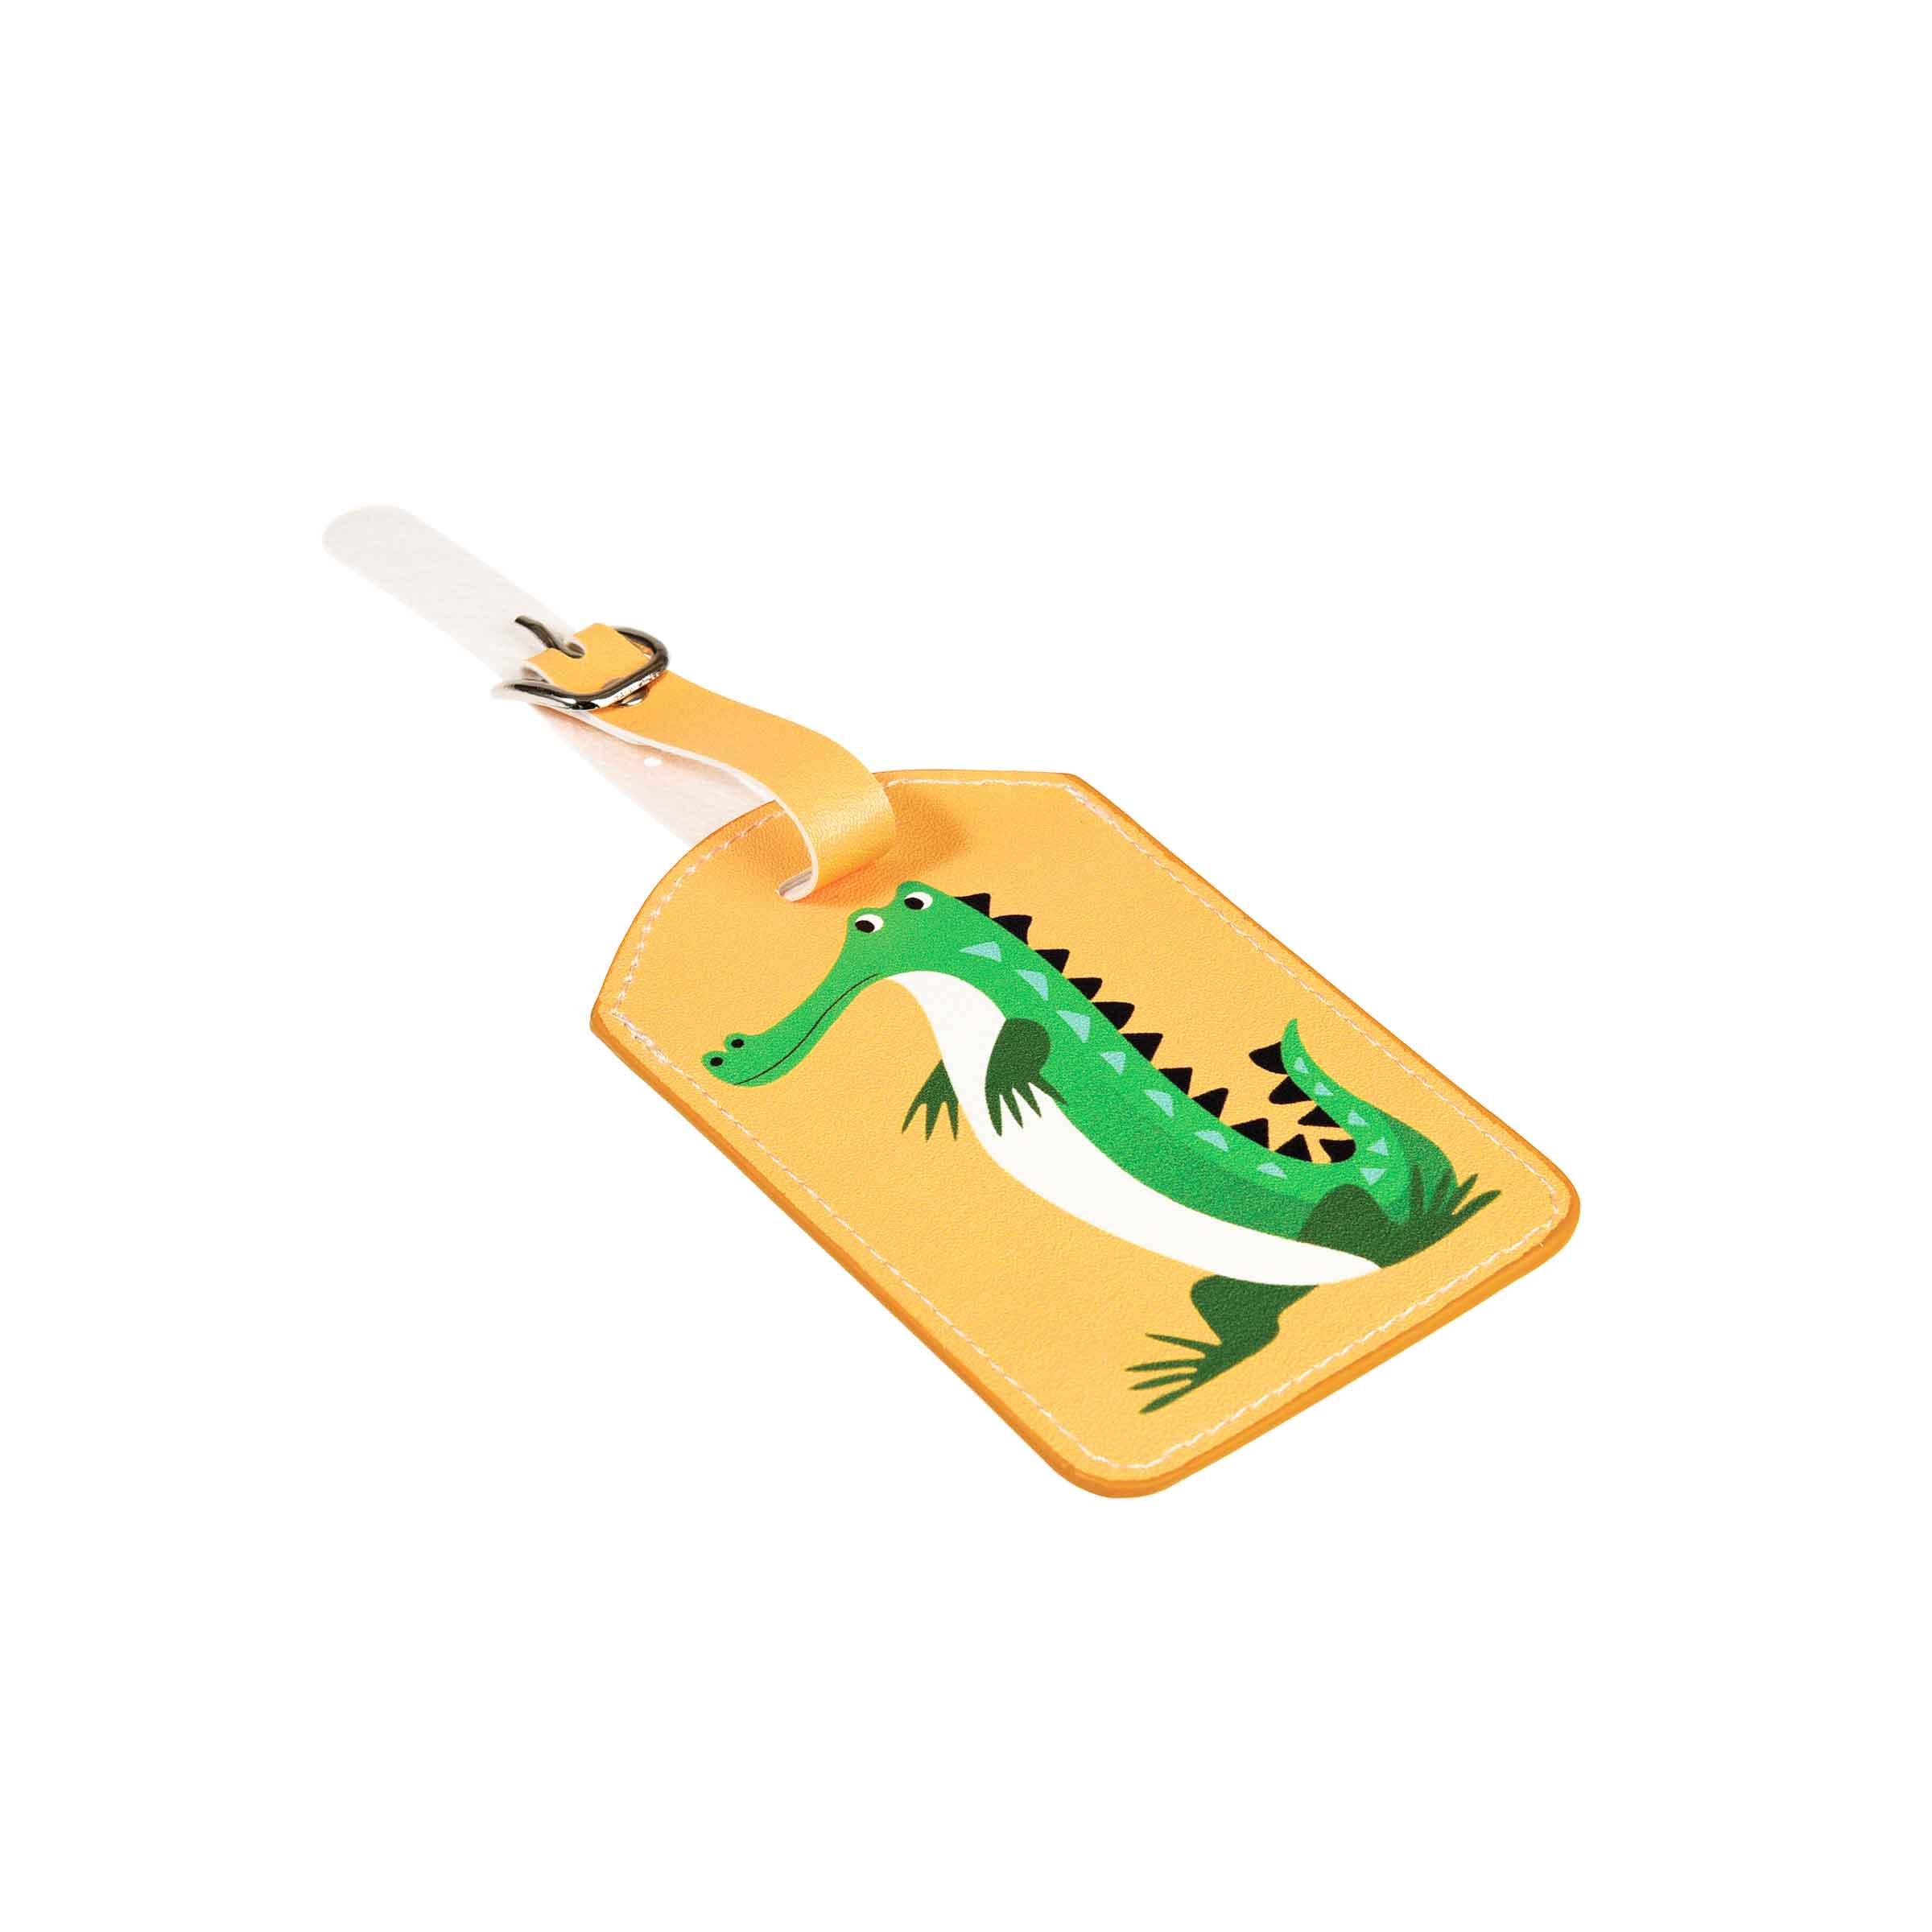 Porte-étiquette en simili cuir jaune avec un crocodile